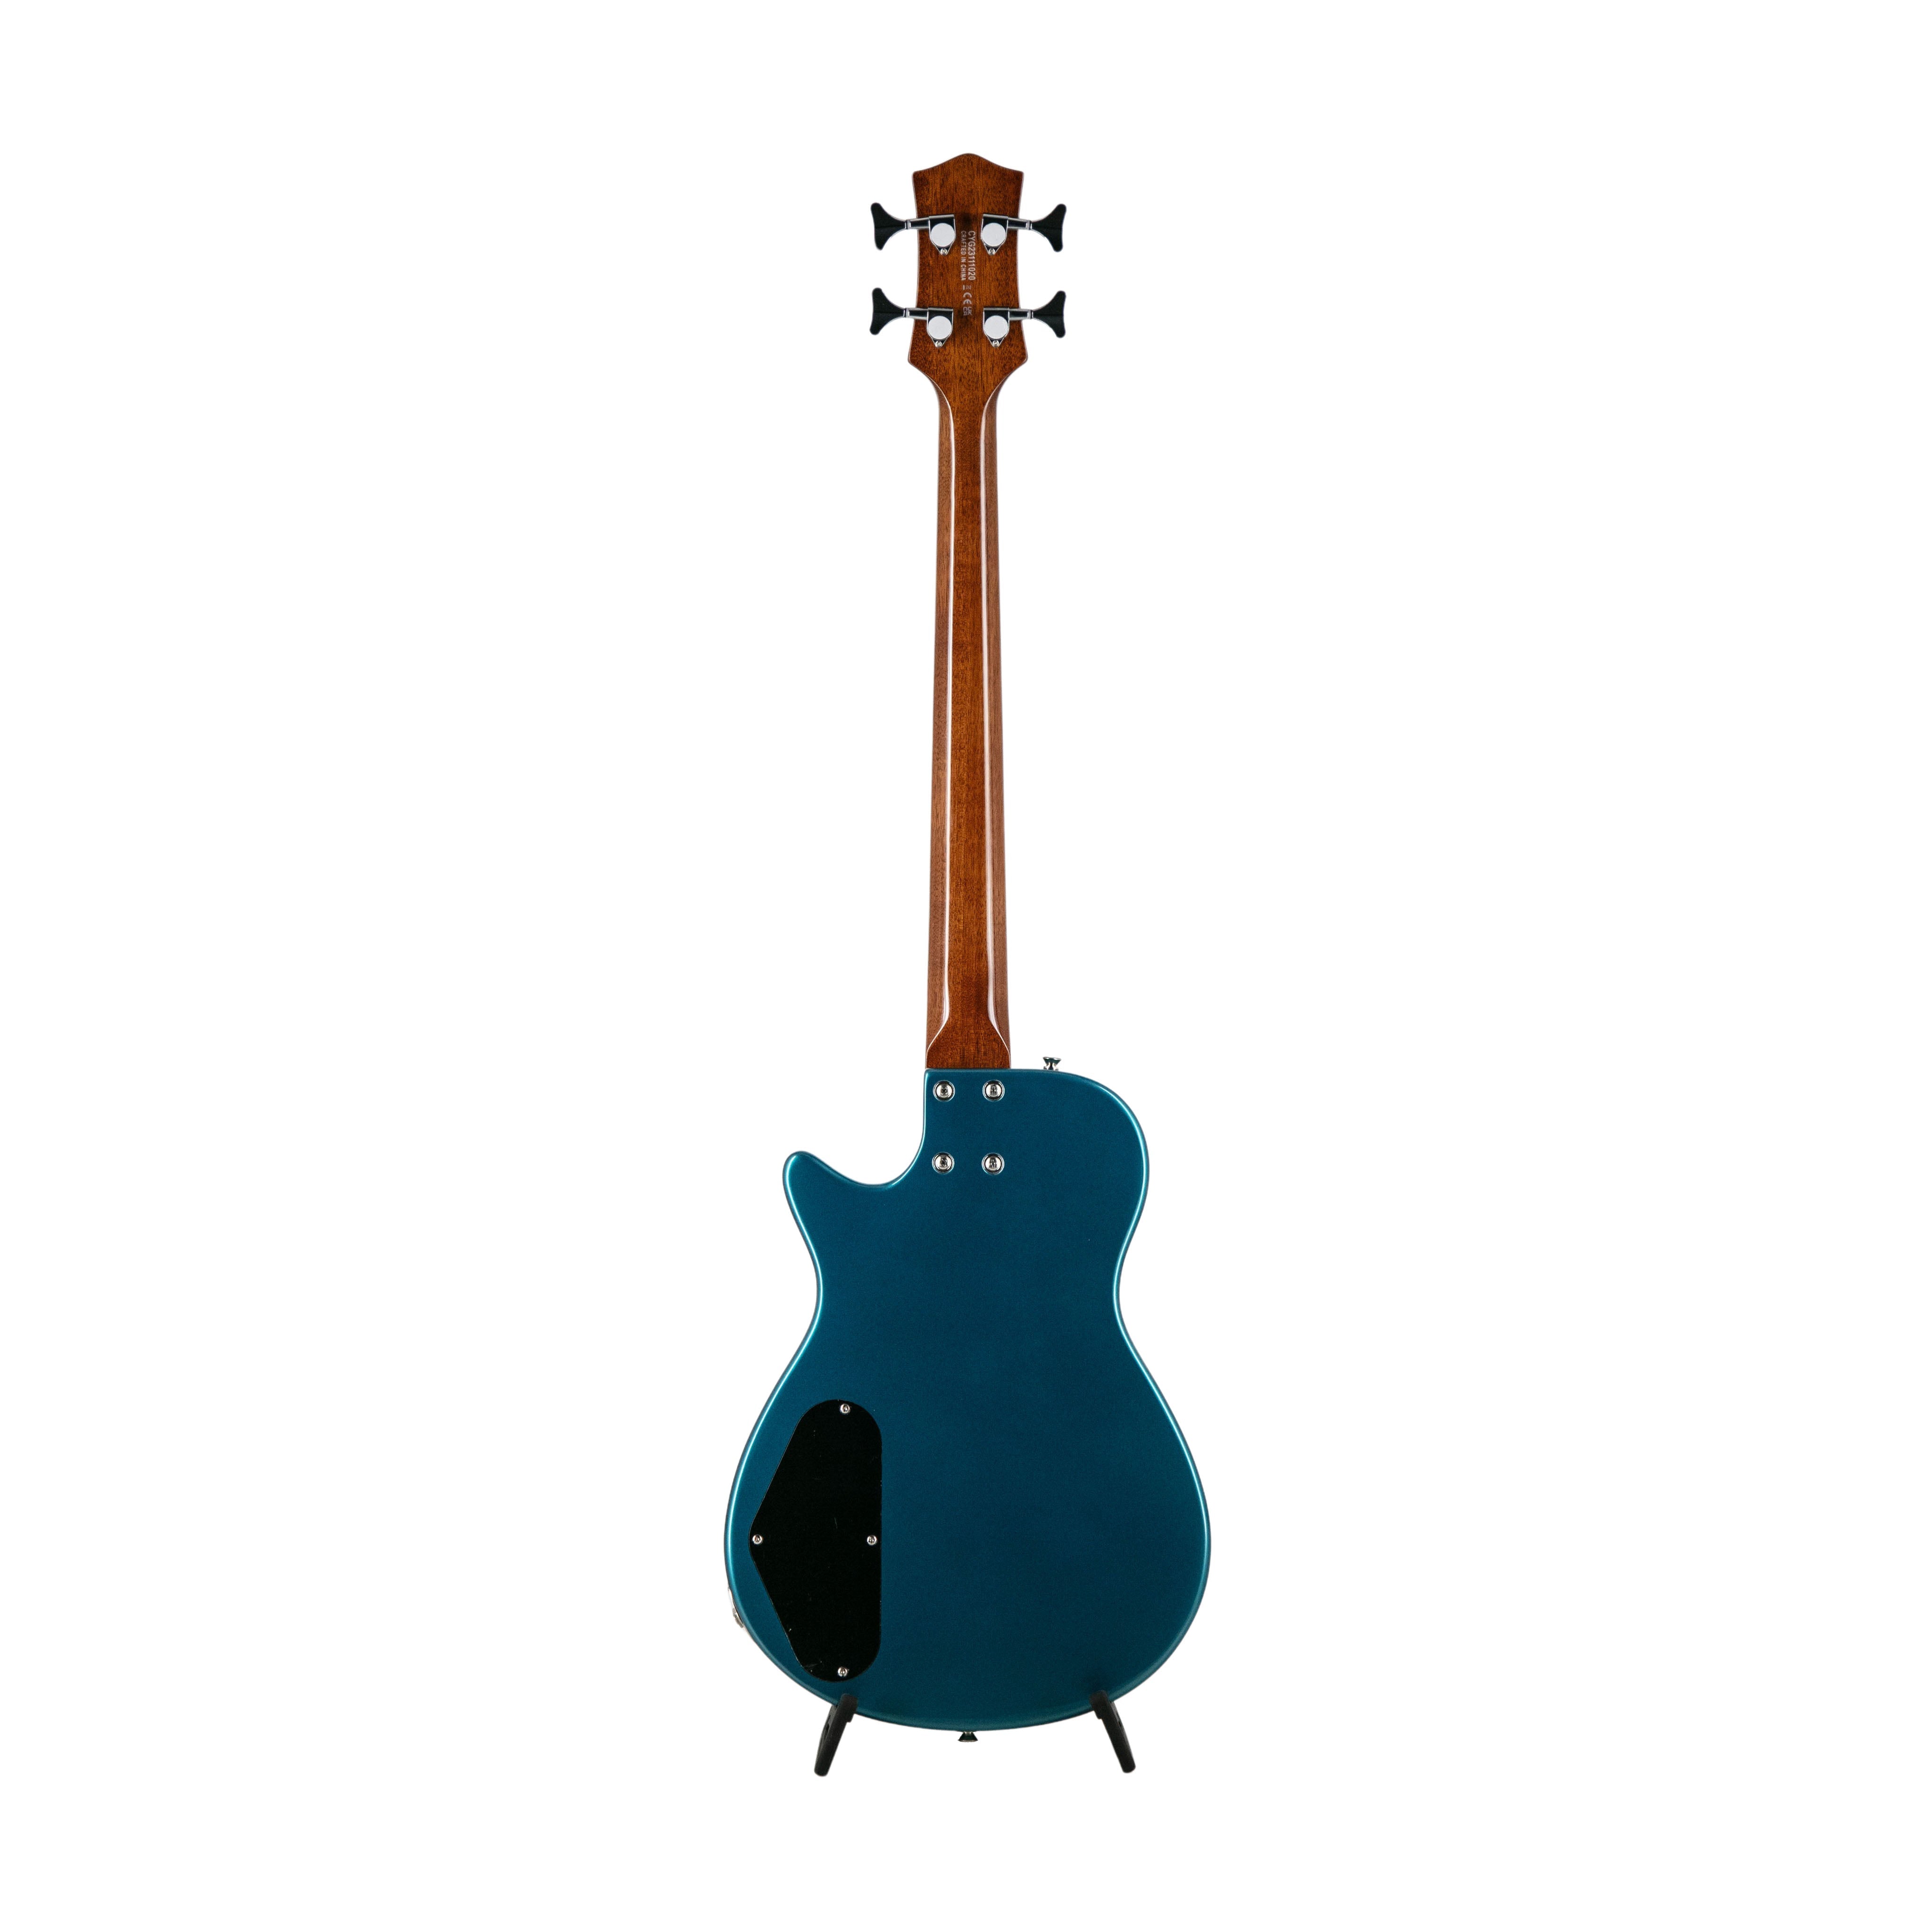 Gretsch FSR G2229B Electromatic Junior Jet Bass II Guitar, Ocean Turquoise